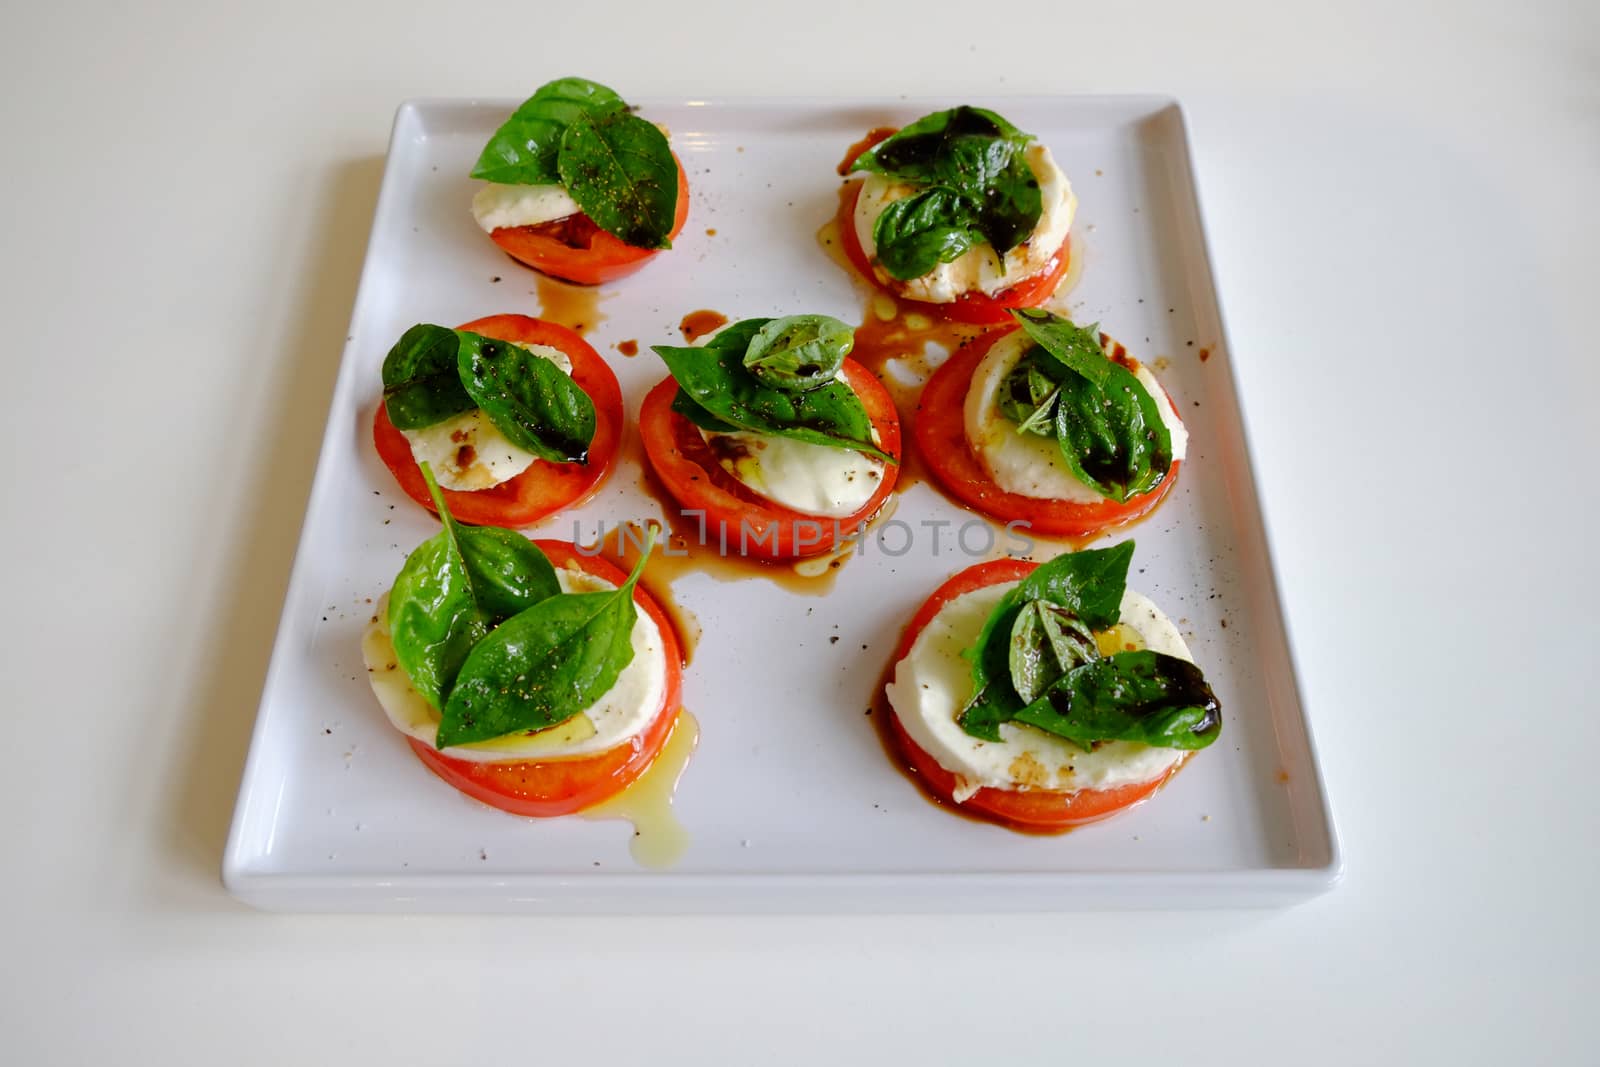 Tomato, basil and bocconcini salad